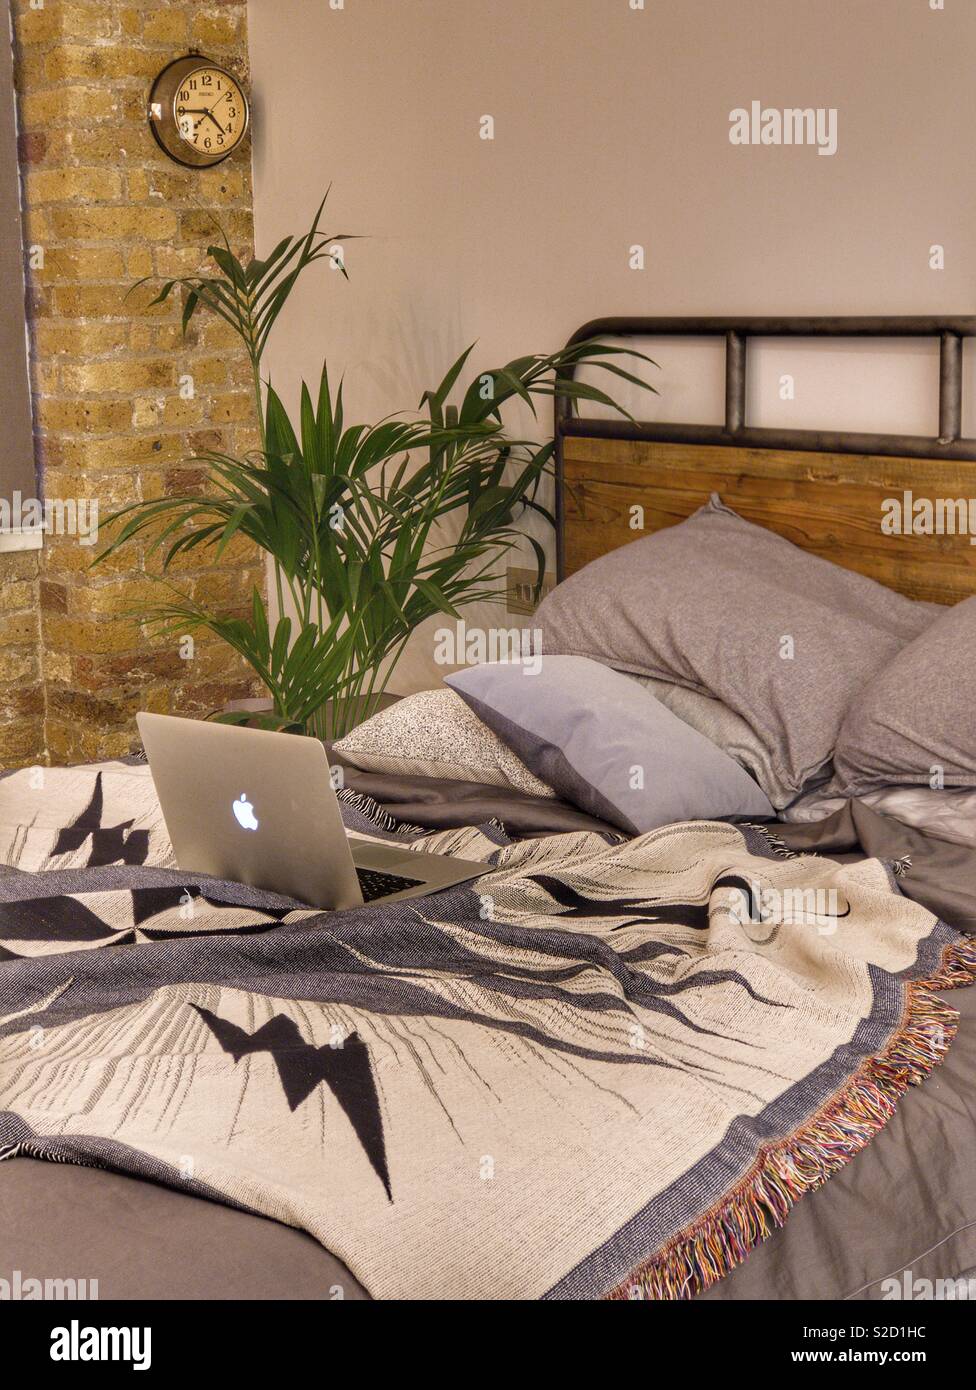 Cama desordenada en estilo loft dormitorio chic industrial con palmera y mac portátil Foto de stock